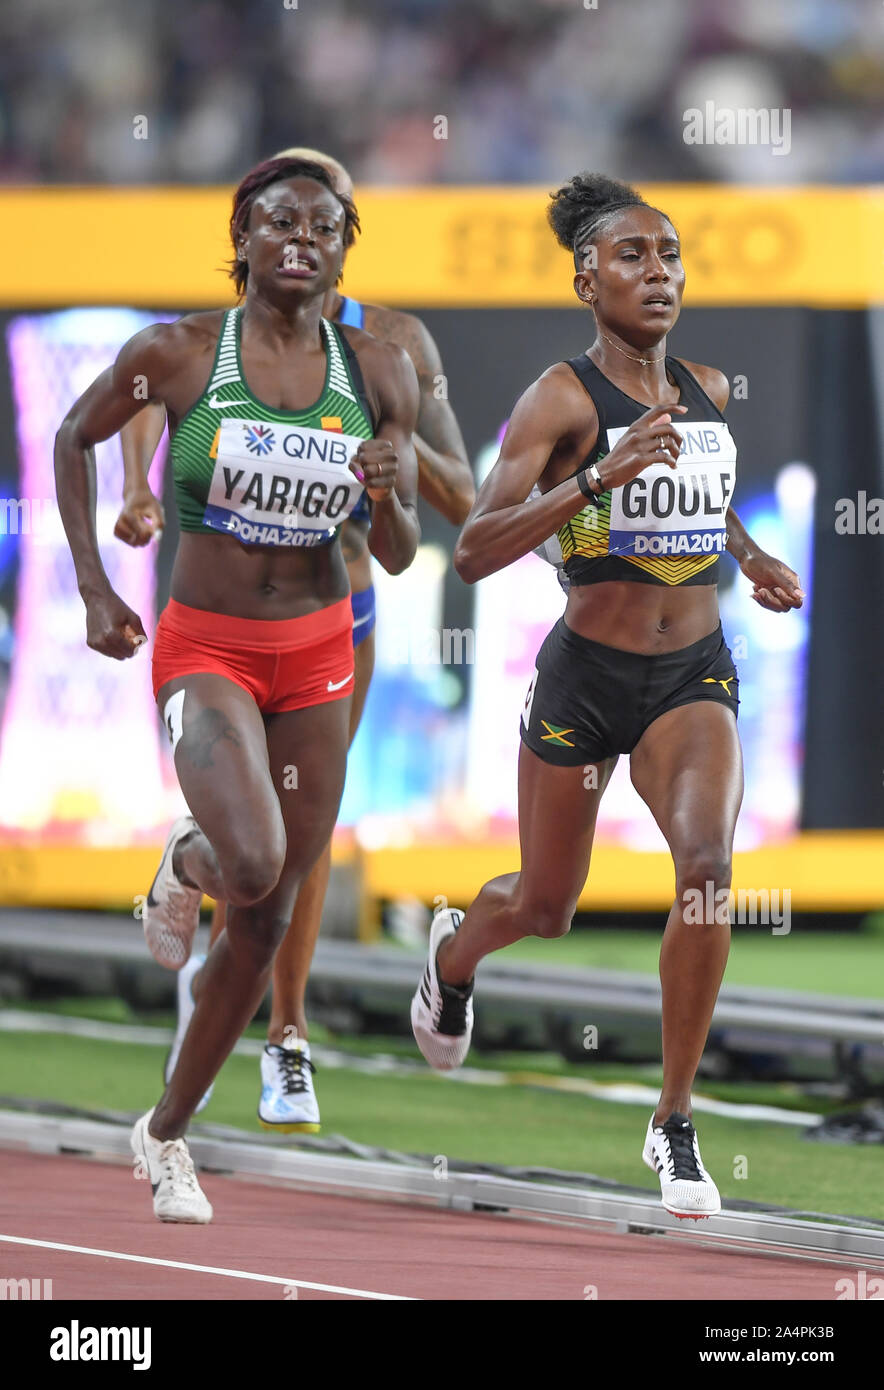 Natoya Goule (Jamaika), Noélie Yarigo (Benin). 800 m Frauen, heizt. IAAF Leichtathletik WM, Doha 2019 Stockfoto